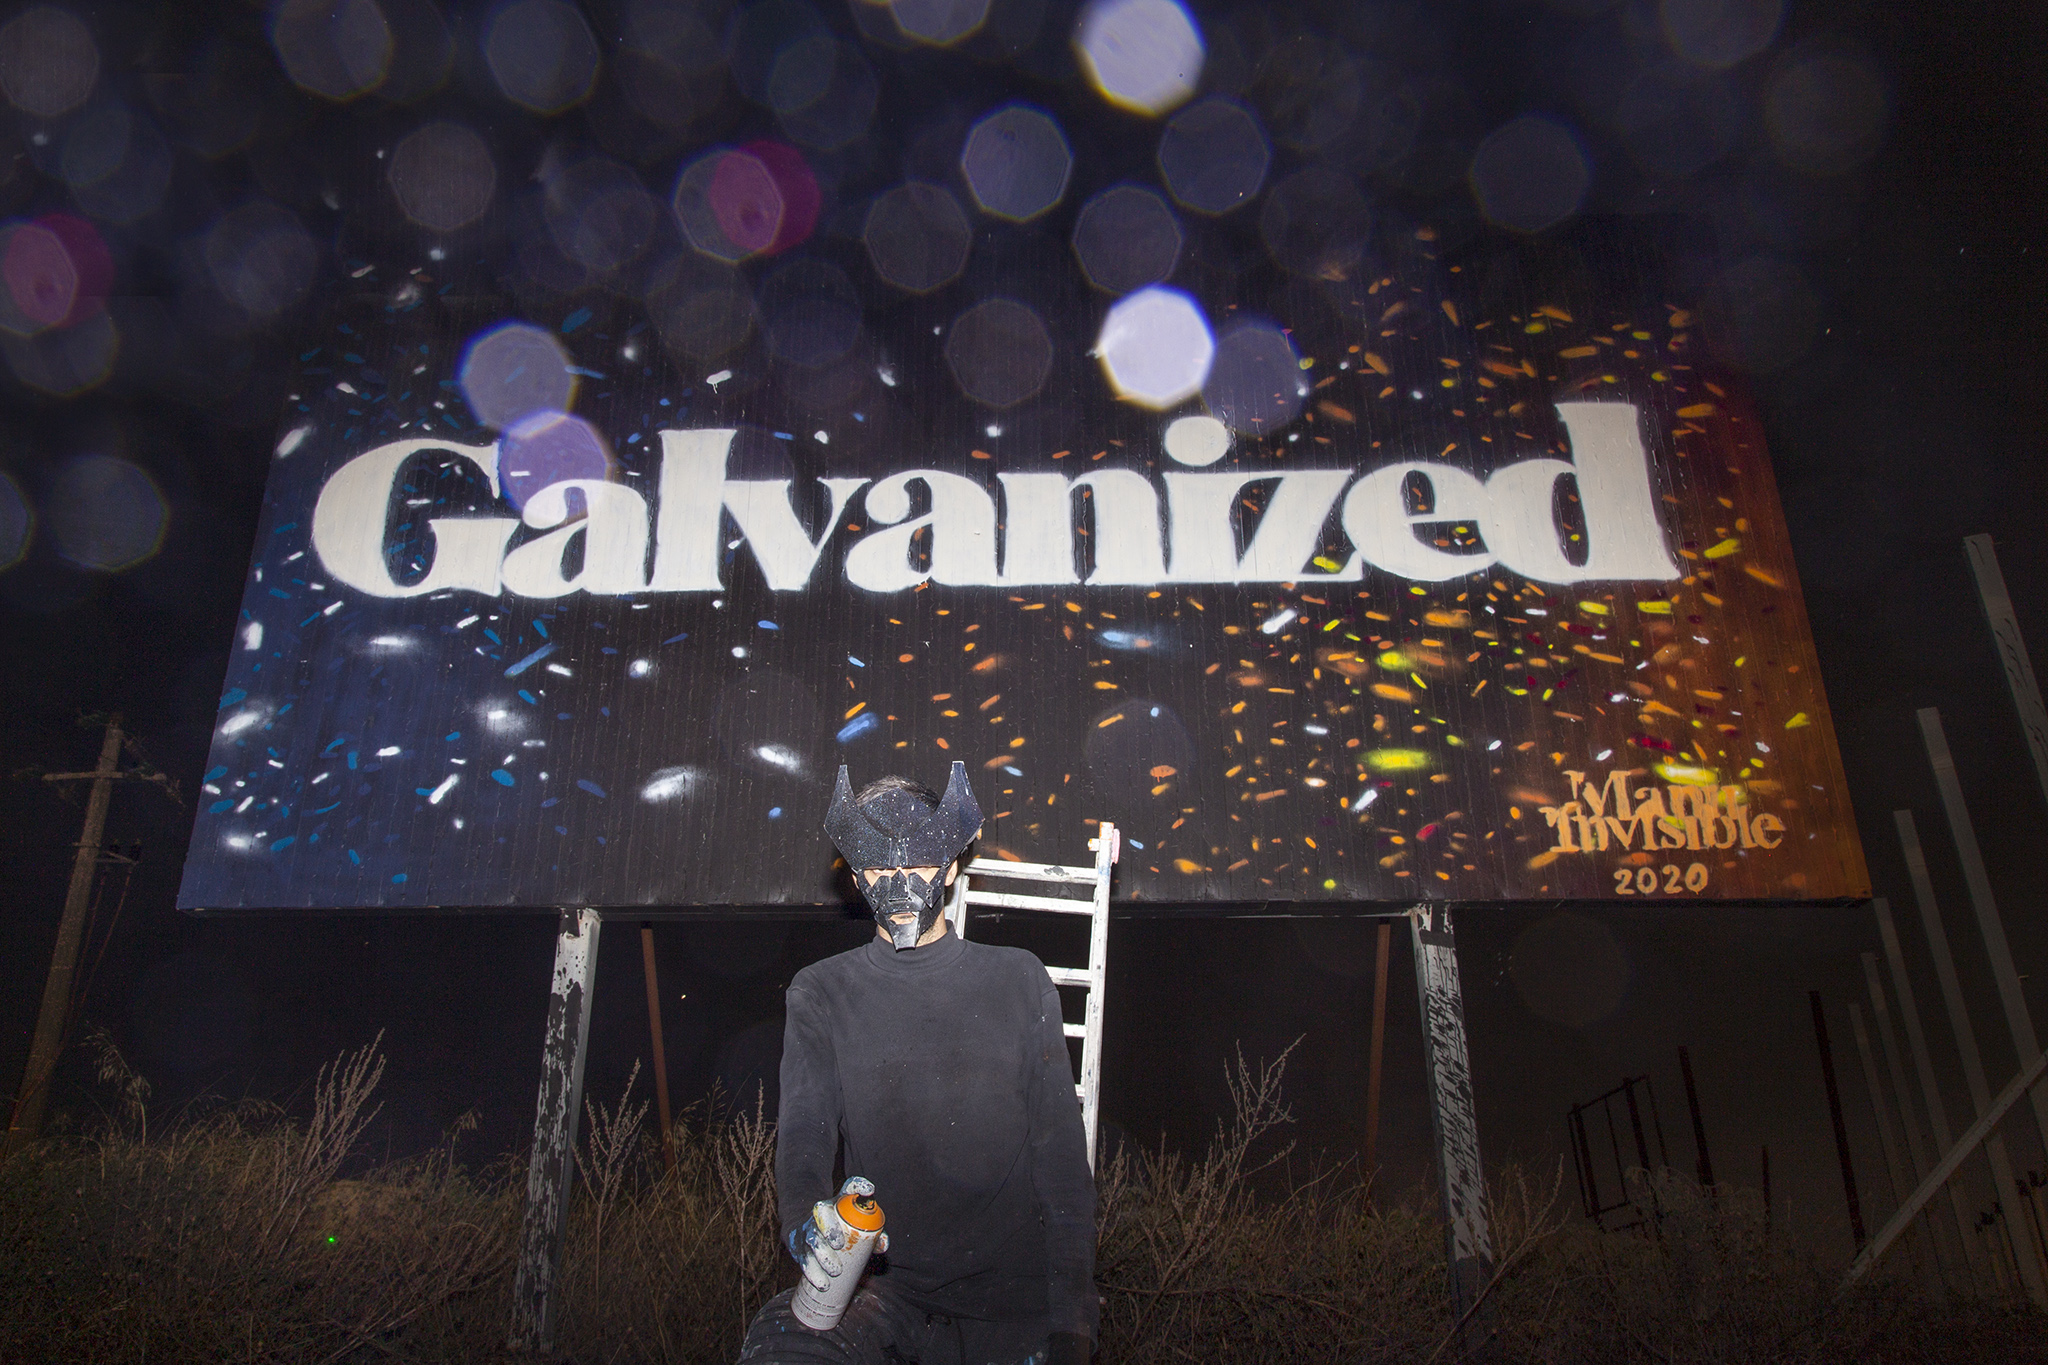 “Galvanized” Gaine liquide et spray sur panneau 6 x 3 m Cagliari 2020